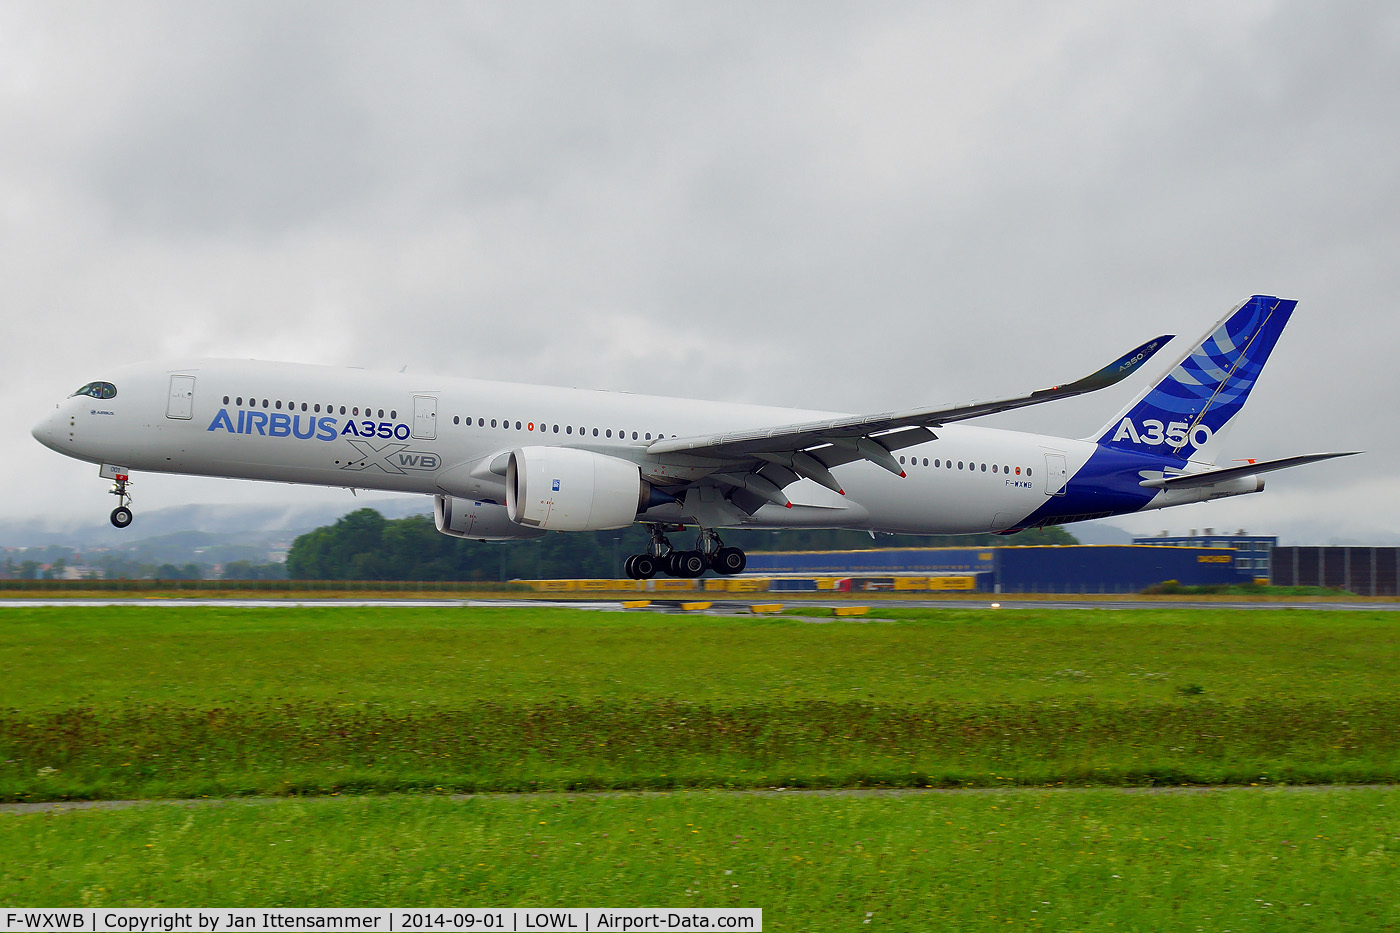 F-WXWB, 2013 Airbus A350-941 C/N 001, f-wxwb